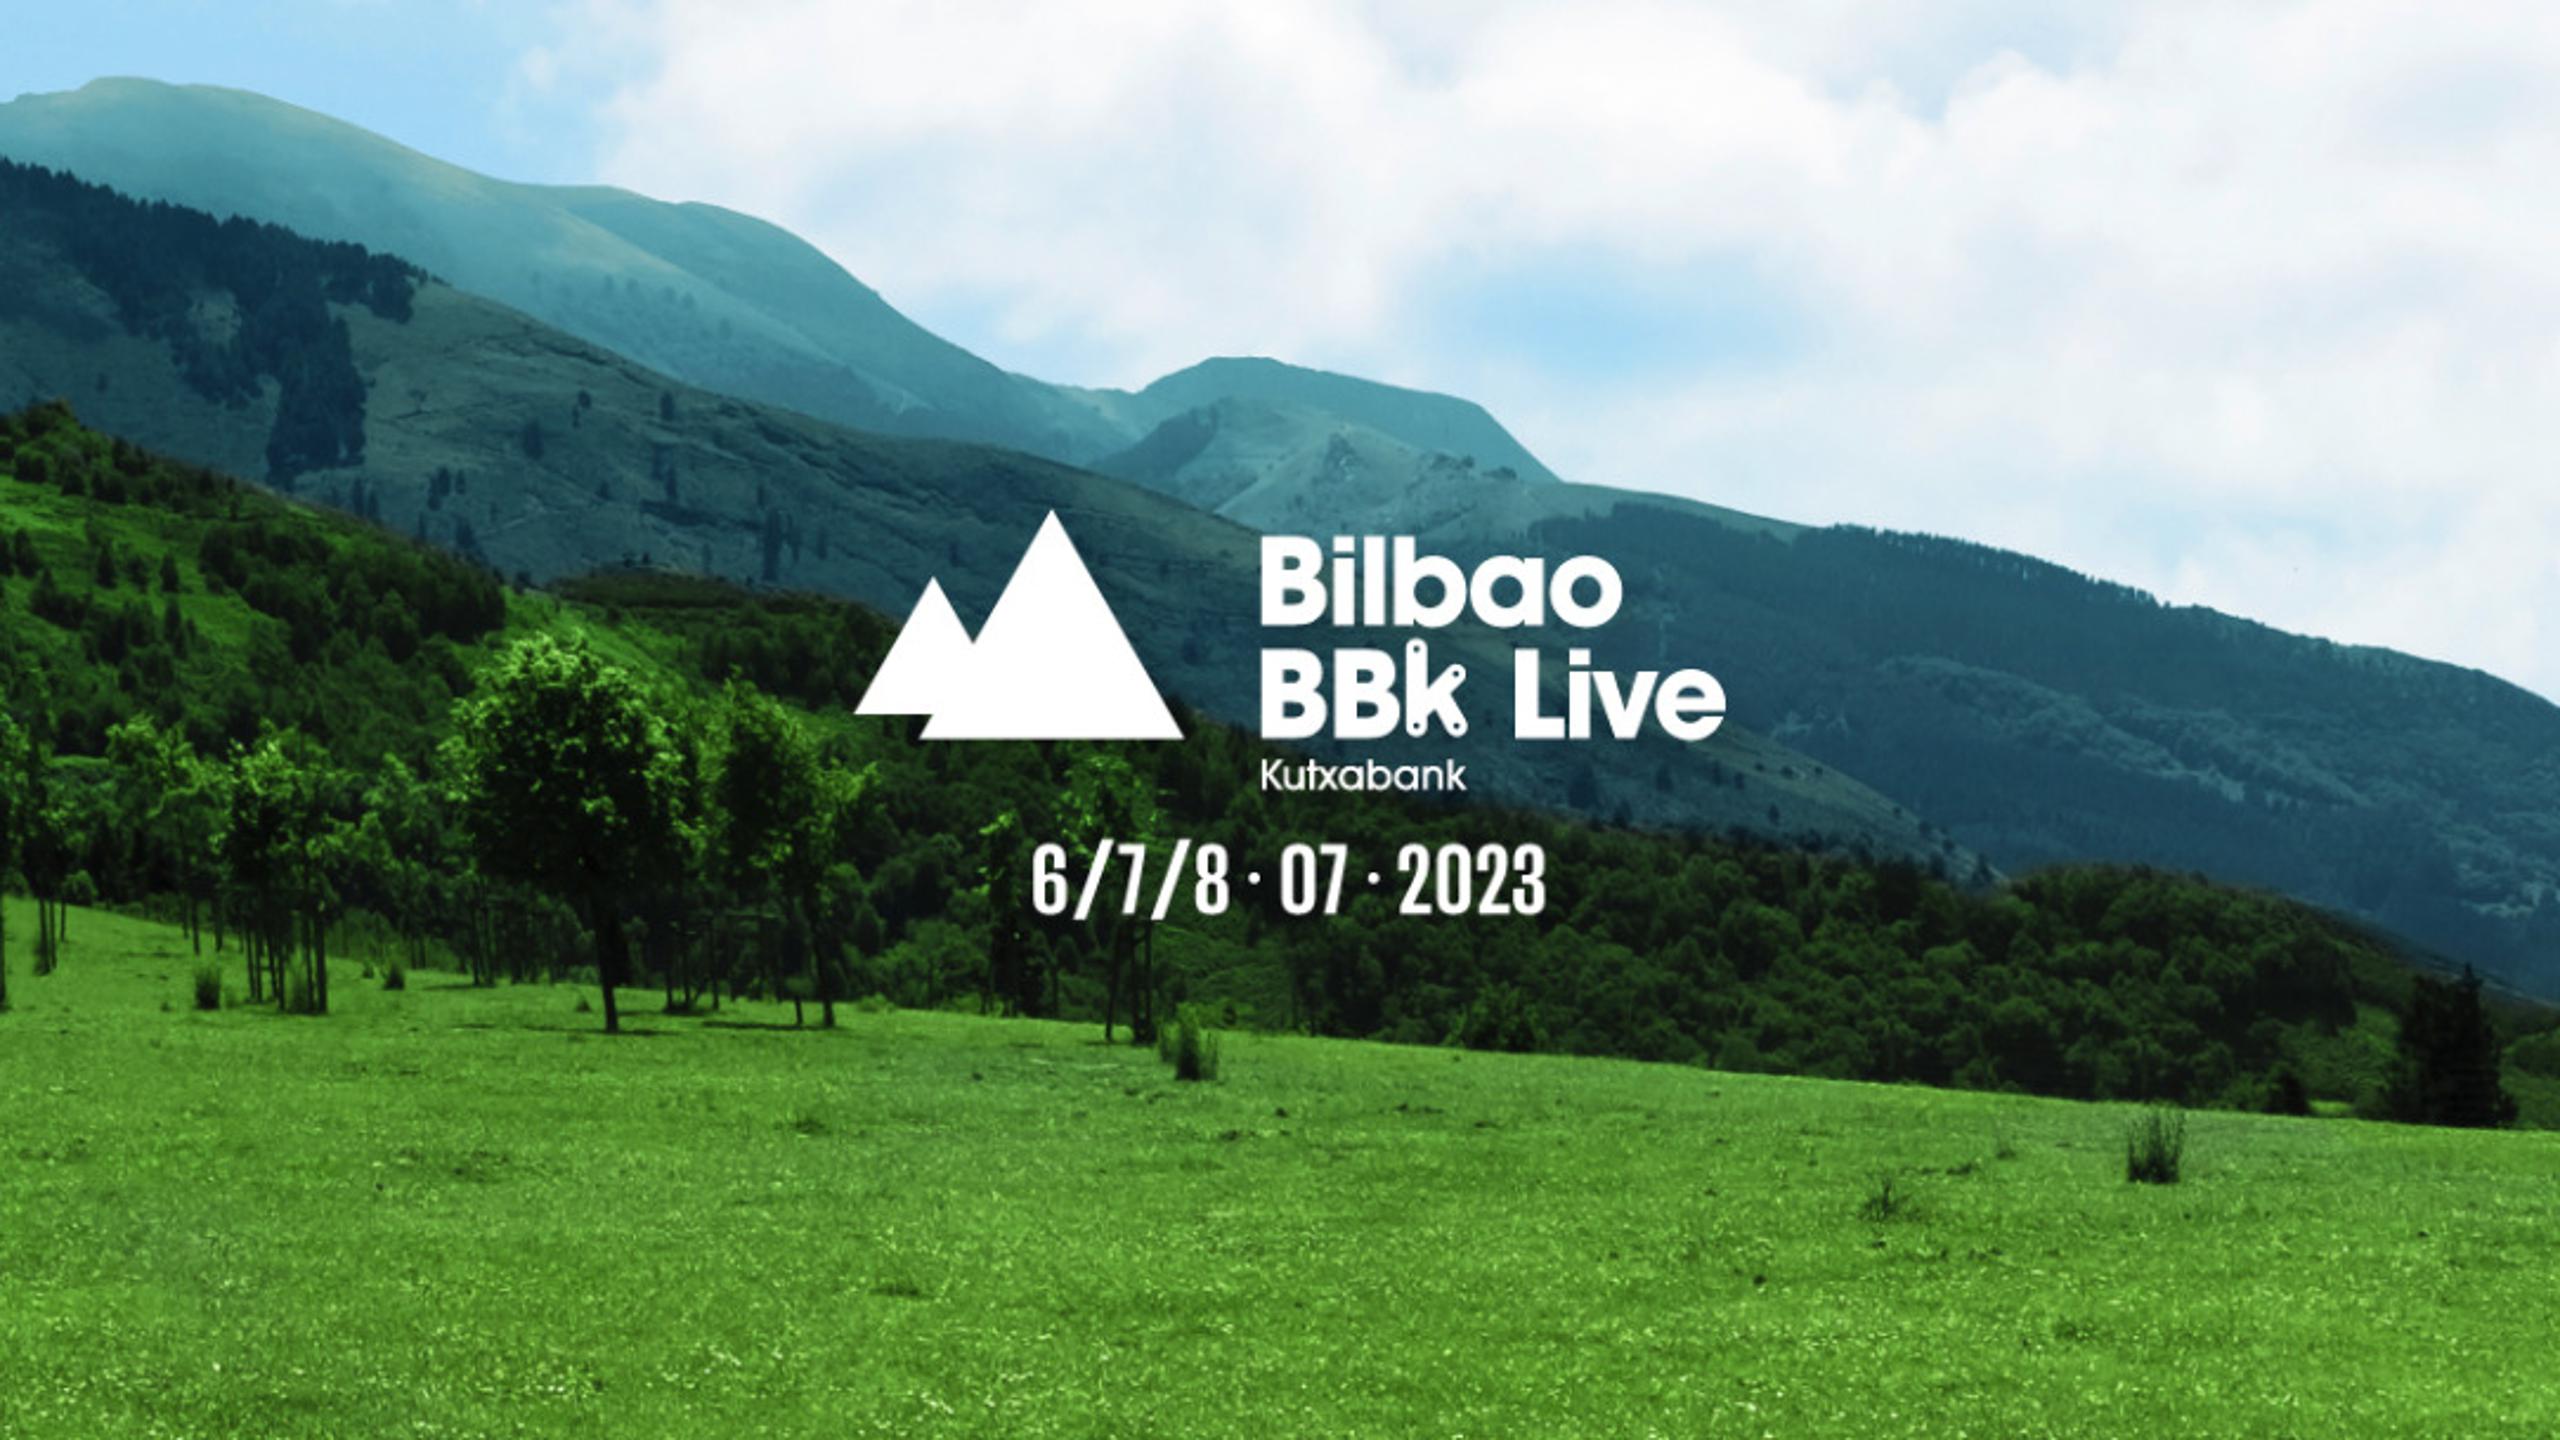 Bilbao BBK Live 2023 Entradas y Horarios en Wegow